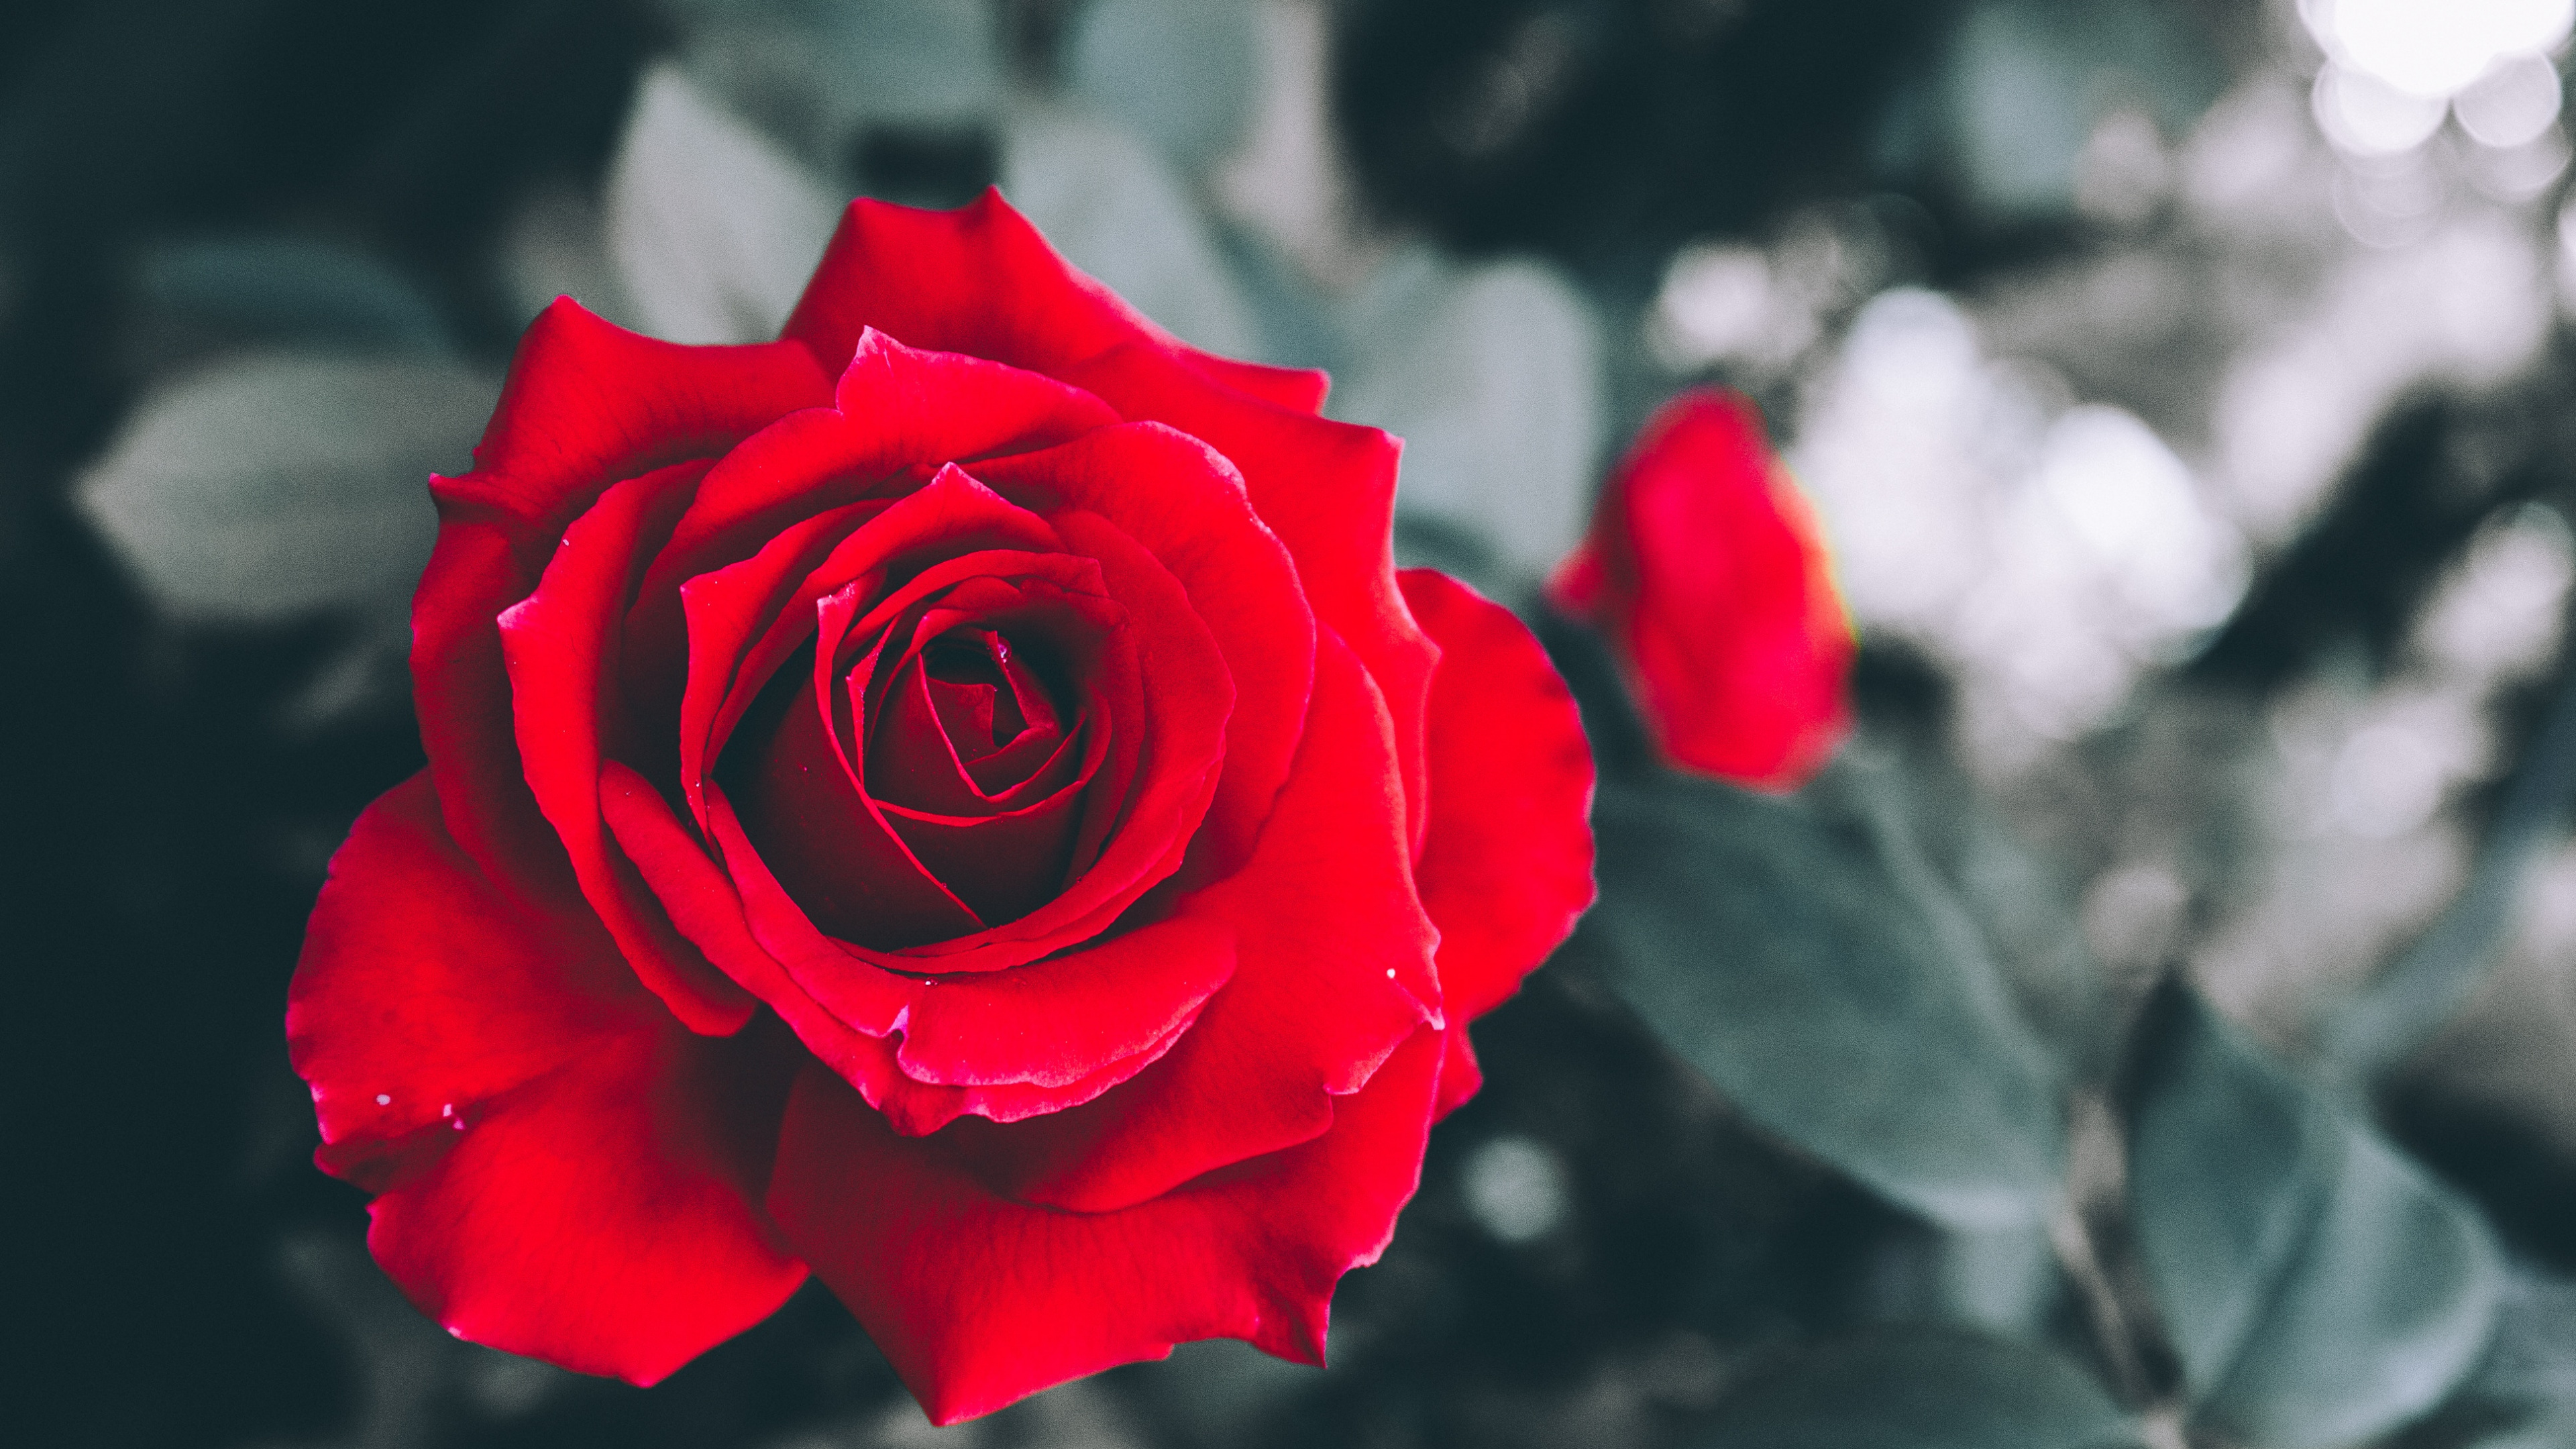 Rosa Roja en Flor en Fotografía de Cerca. Wallpaper in 3840x2160 Resolution